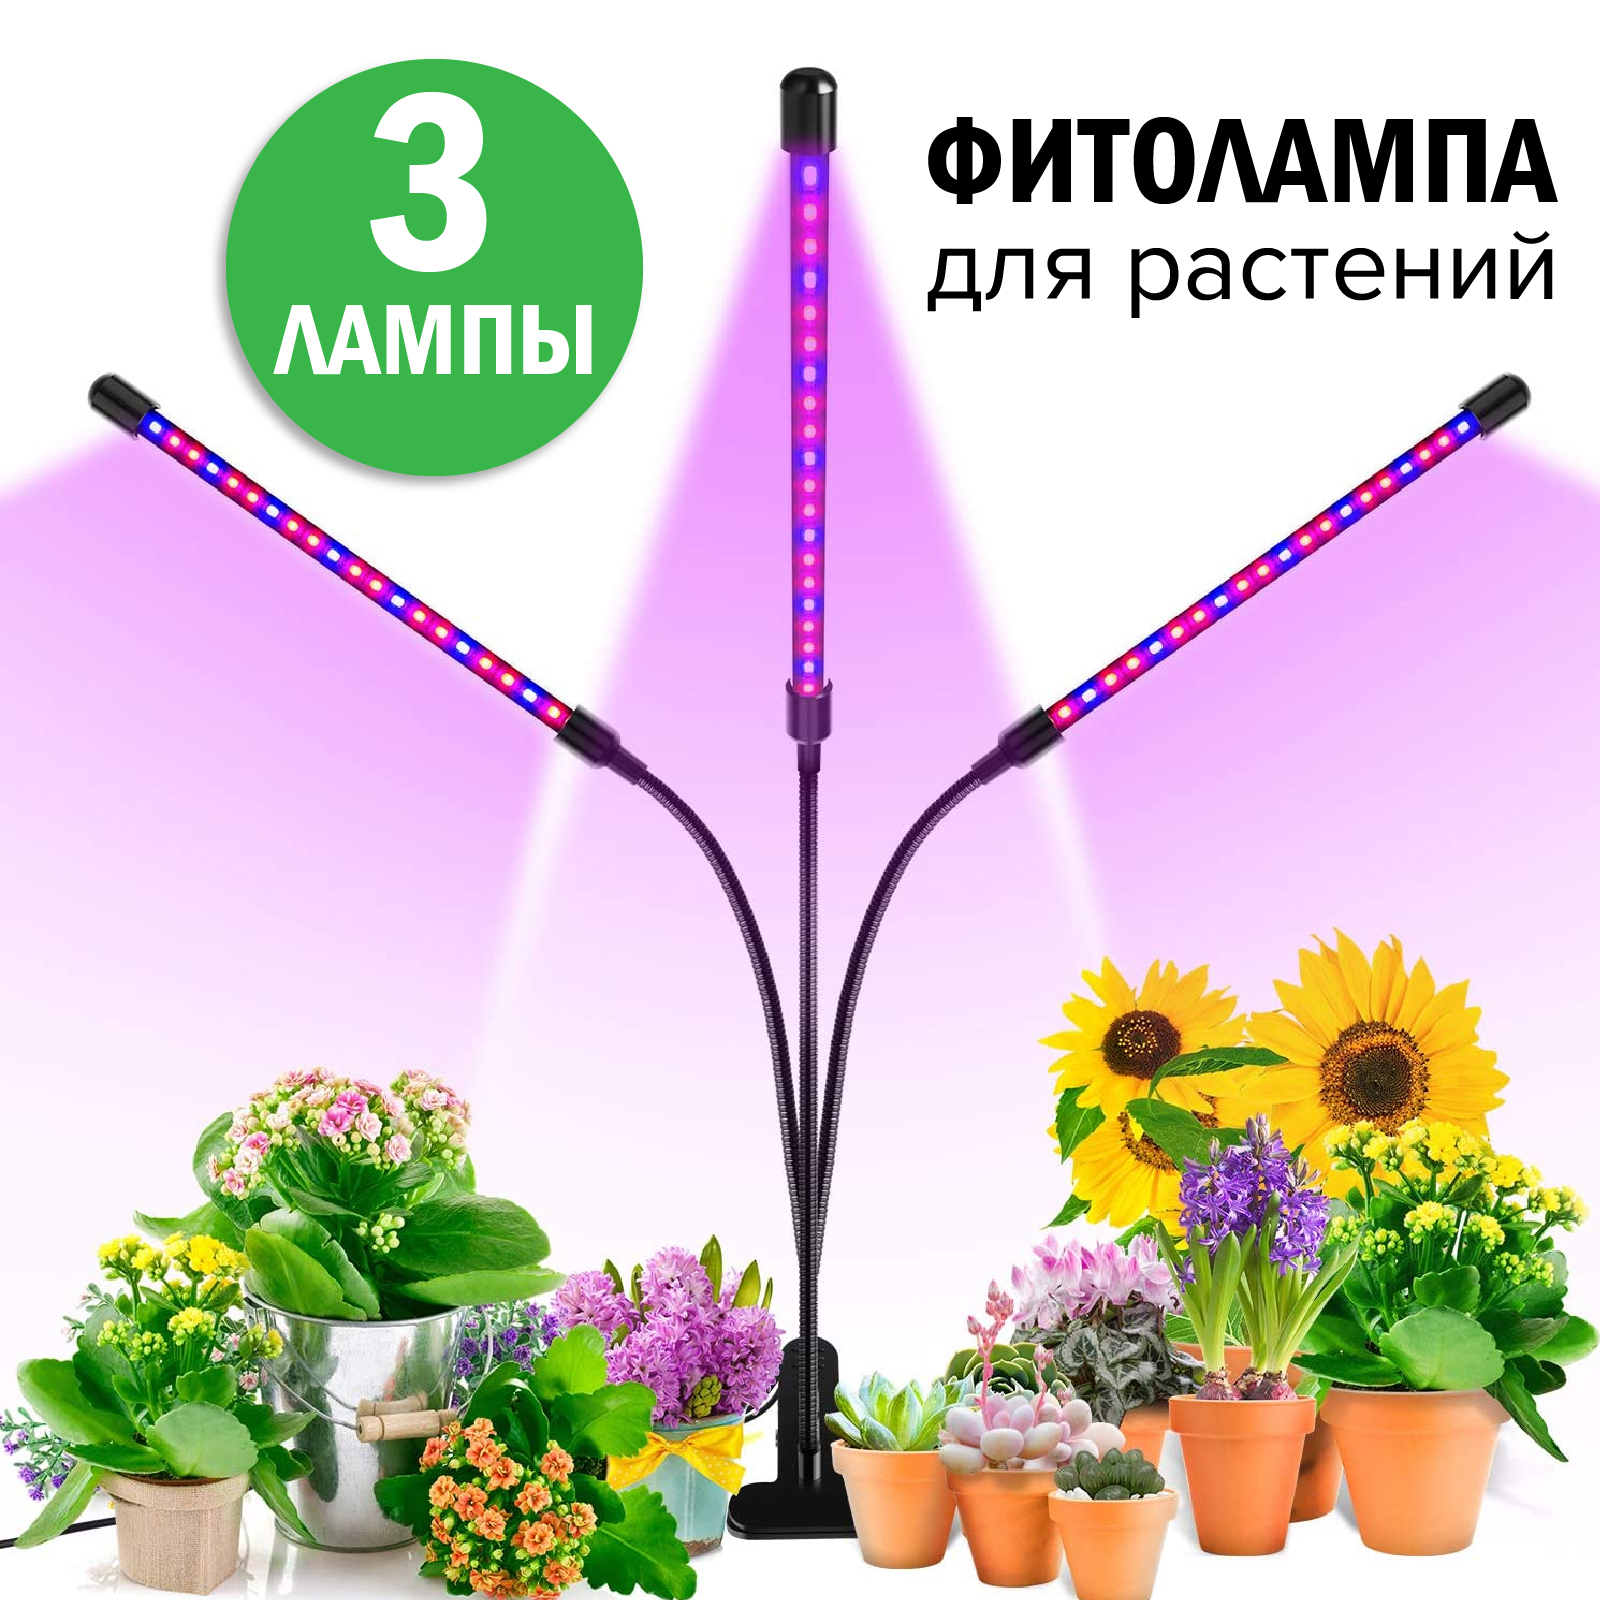 Таймер для рассады. Светильник для рассады. Лампа полный спектр для растений. Светодиодная лампа для растений illumetik полный спектр. Фито лампы с полным спектром света для роста растений купить.